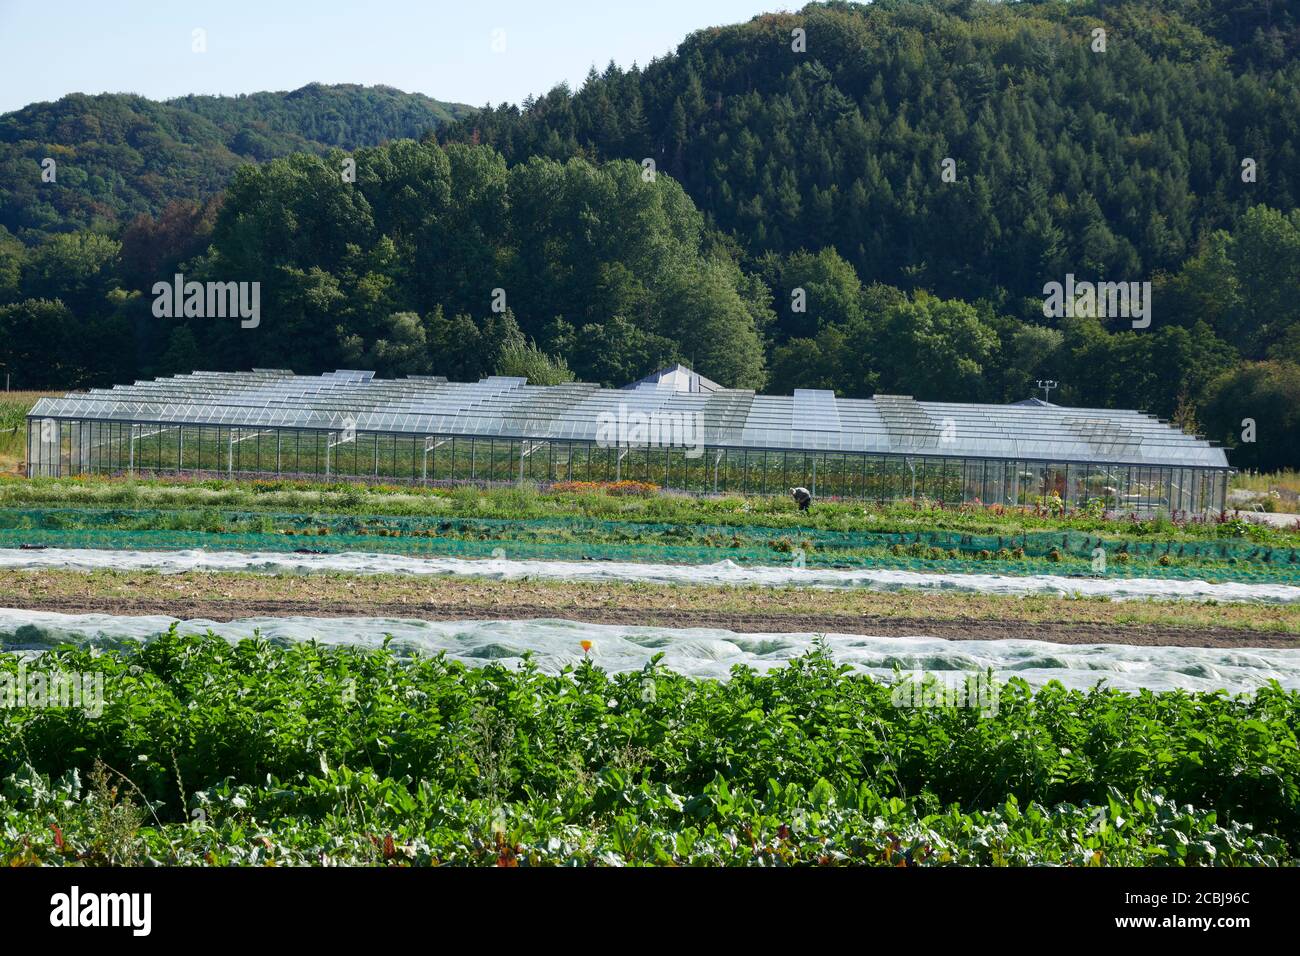 Gewaechshaus auf einem biologisch, dynamischen Bauernhof in dem Gemuese und Melonen angebaut werden. Foto Stock